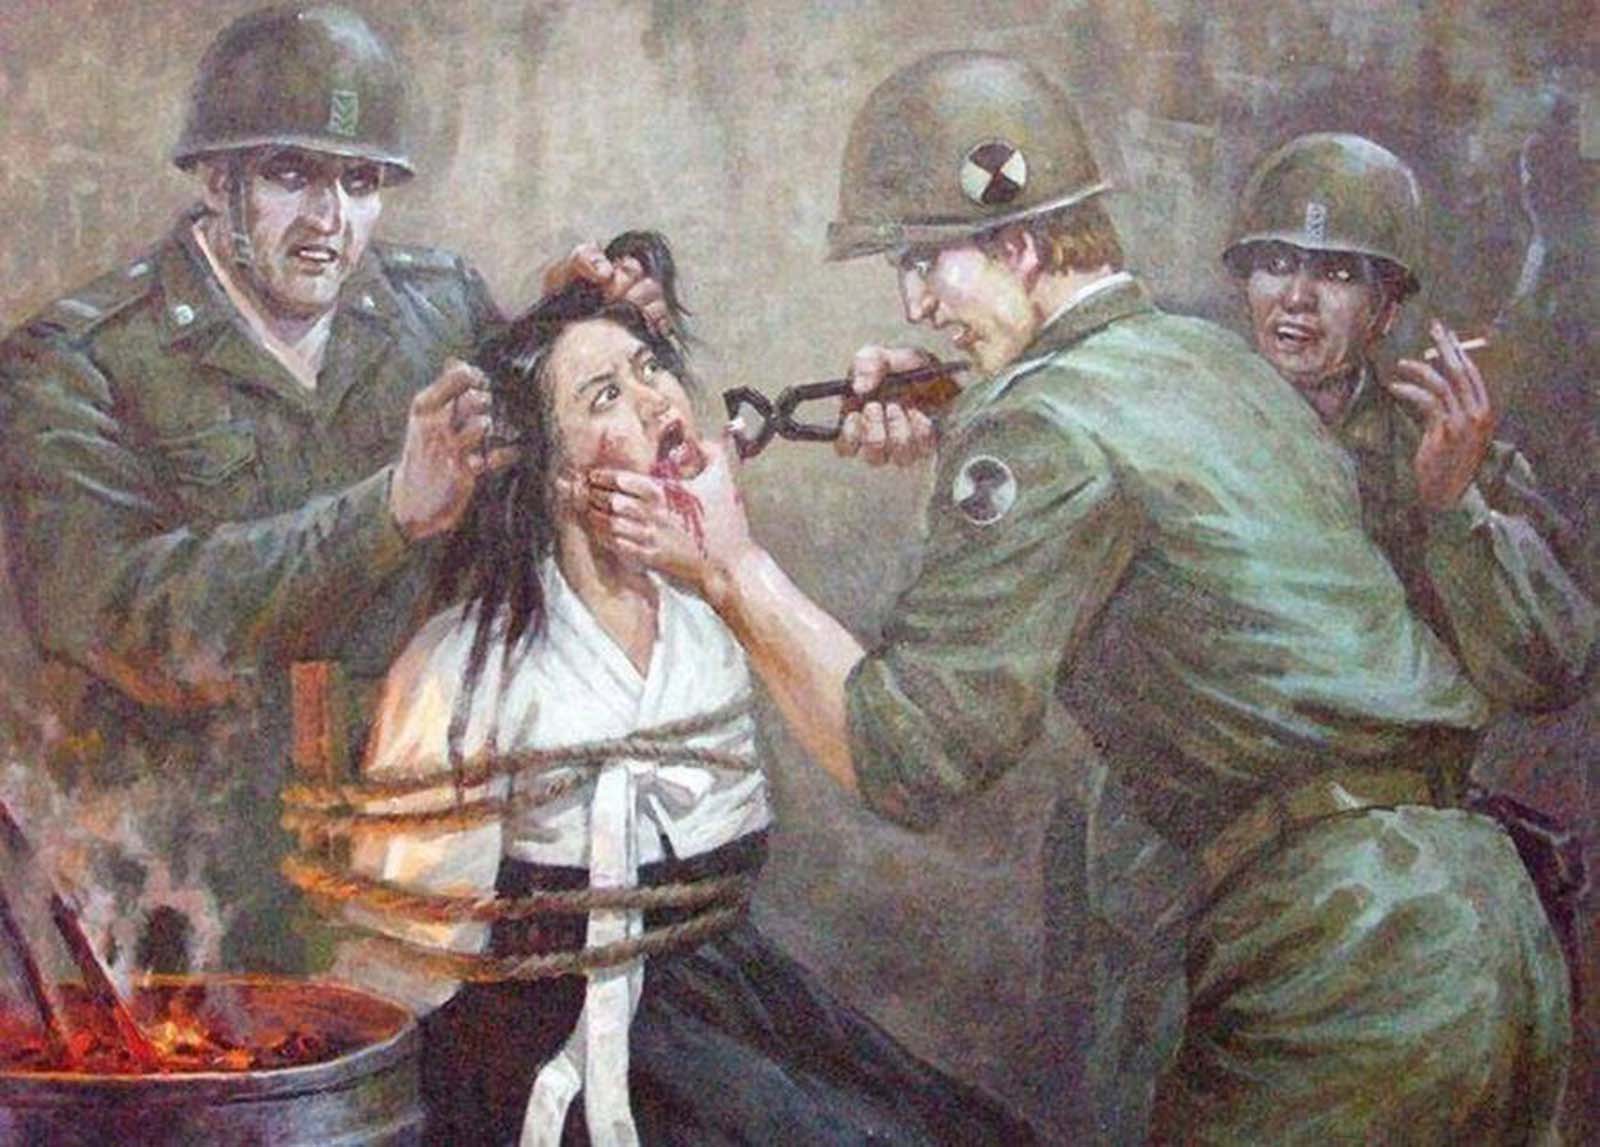 Des images violentes de Nord-coréens anti-Américain de la propagande de l'art, 1950-1970